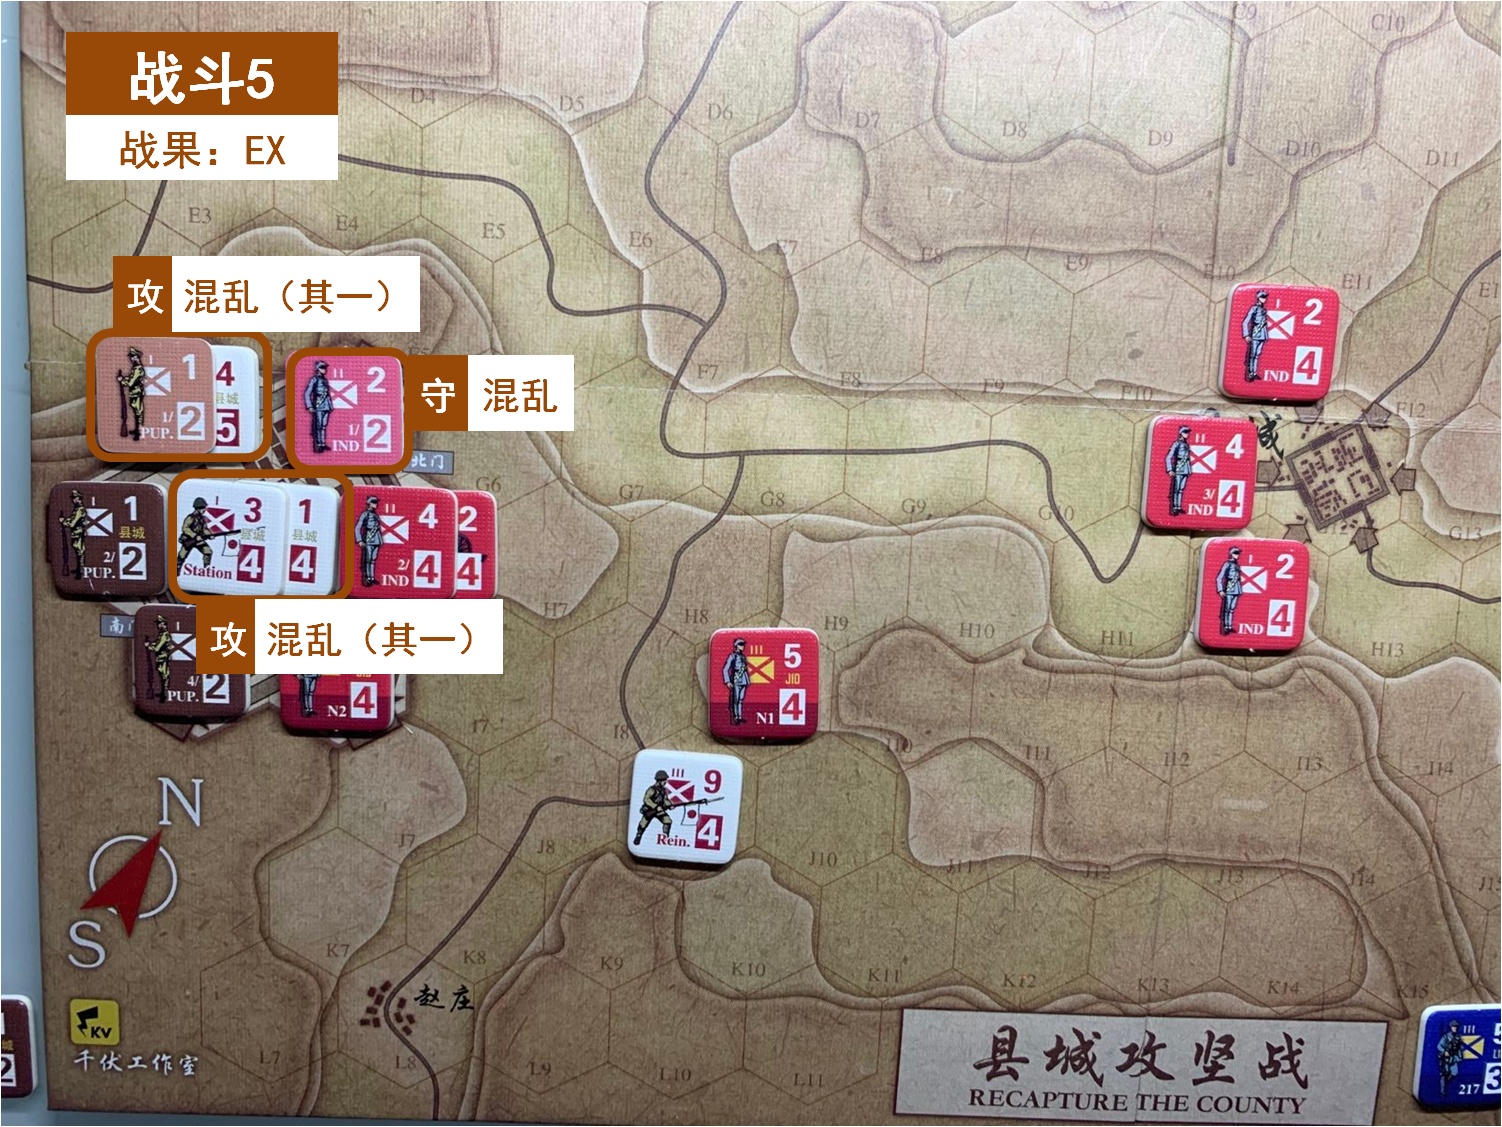 第一回合 日方戰鬥階段 戰鬥5 戰鬥結果